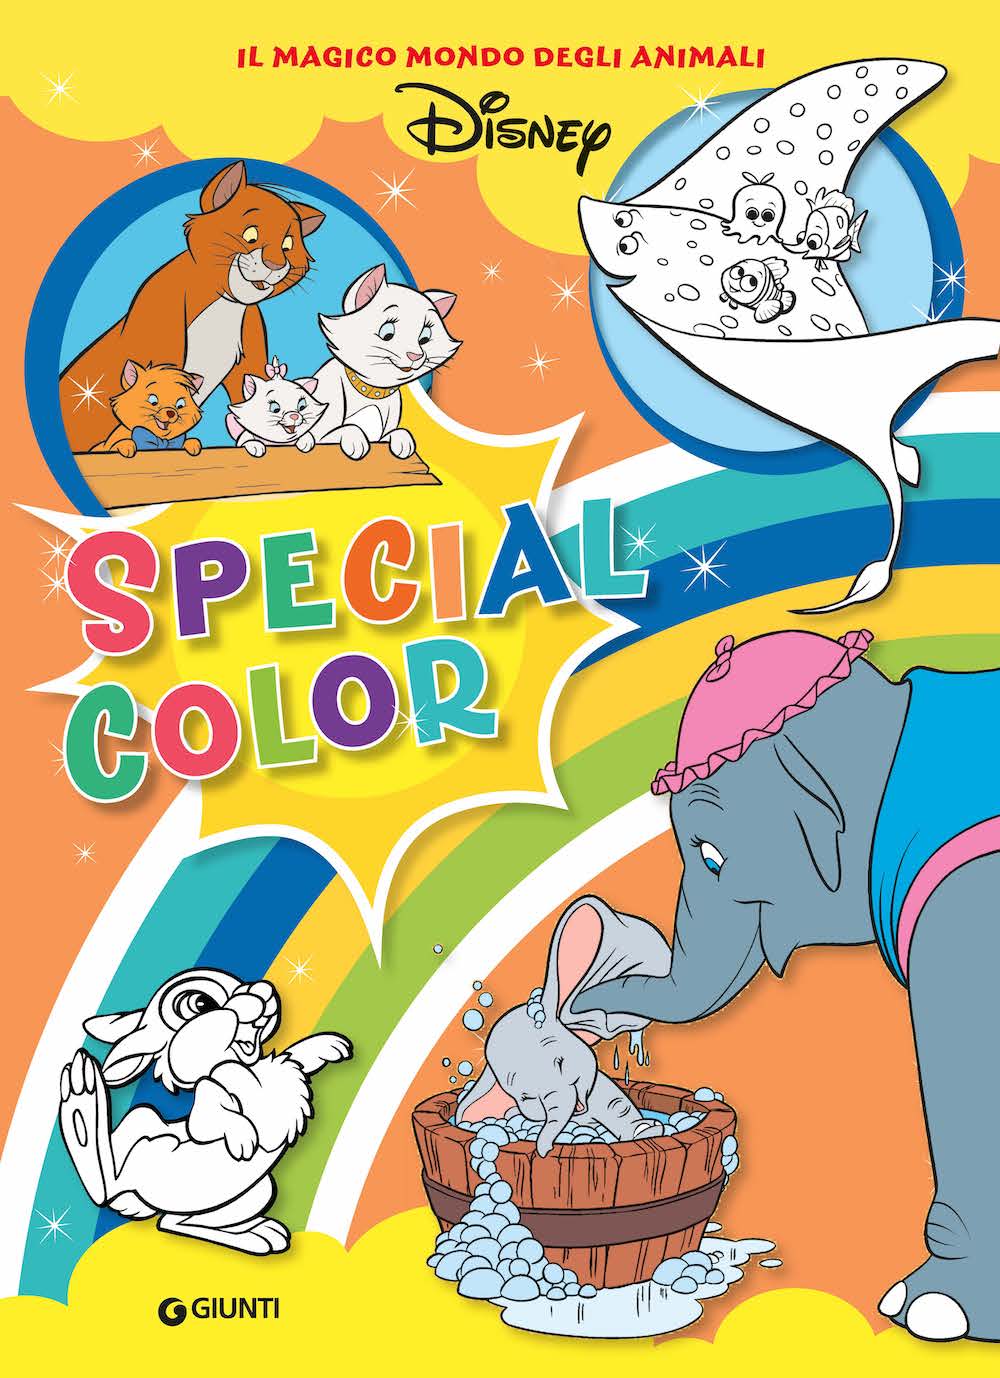 Special color Il magico mondo degli animali Disney